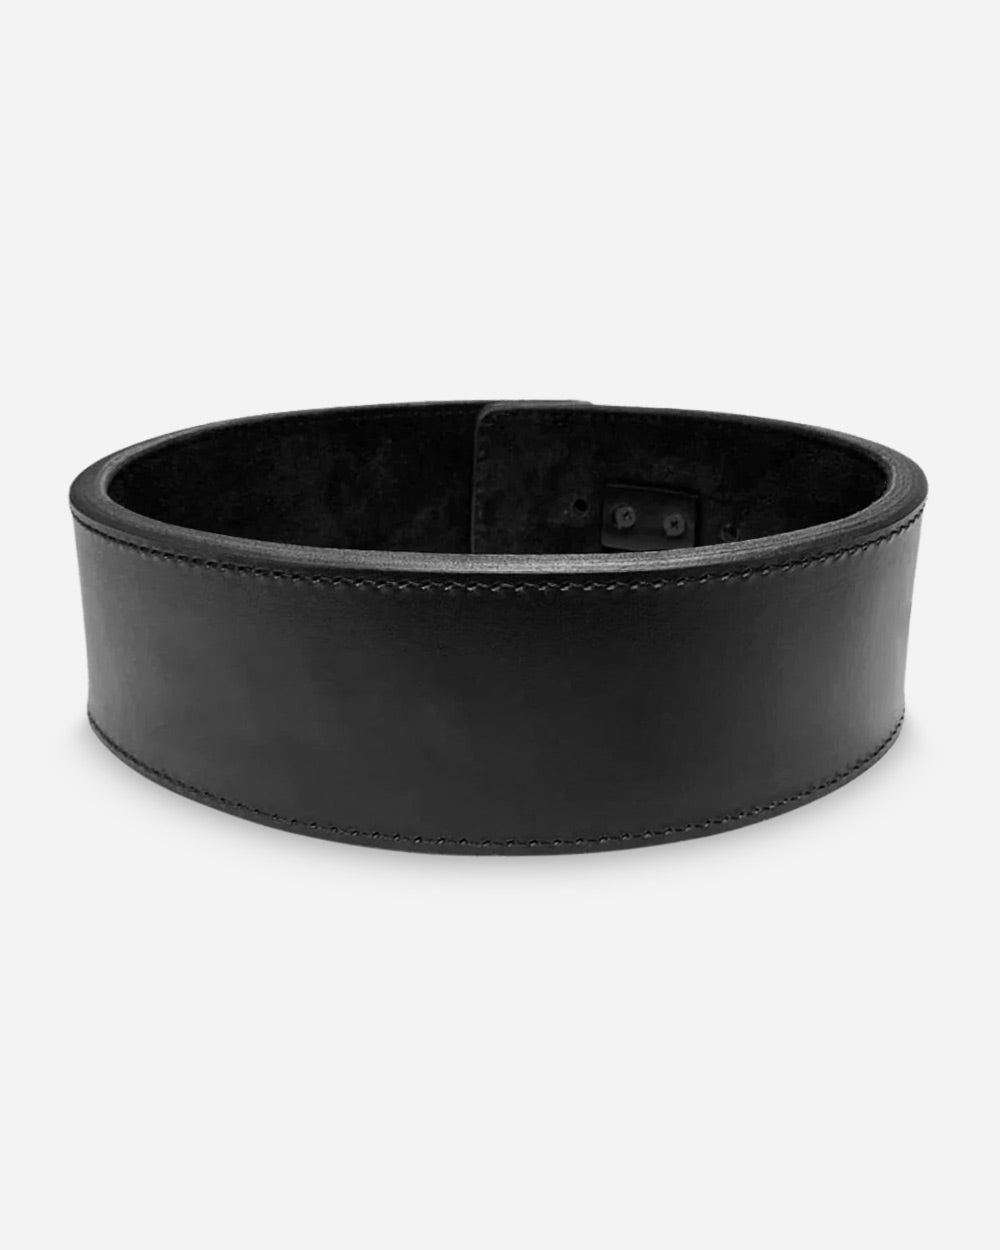 Adjustable Lever Belt 13 mm - Black